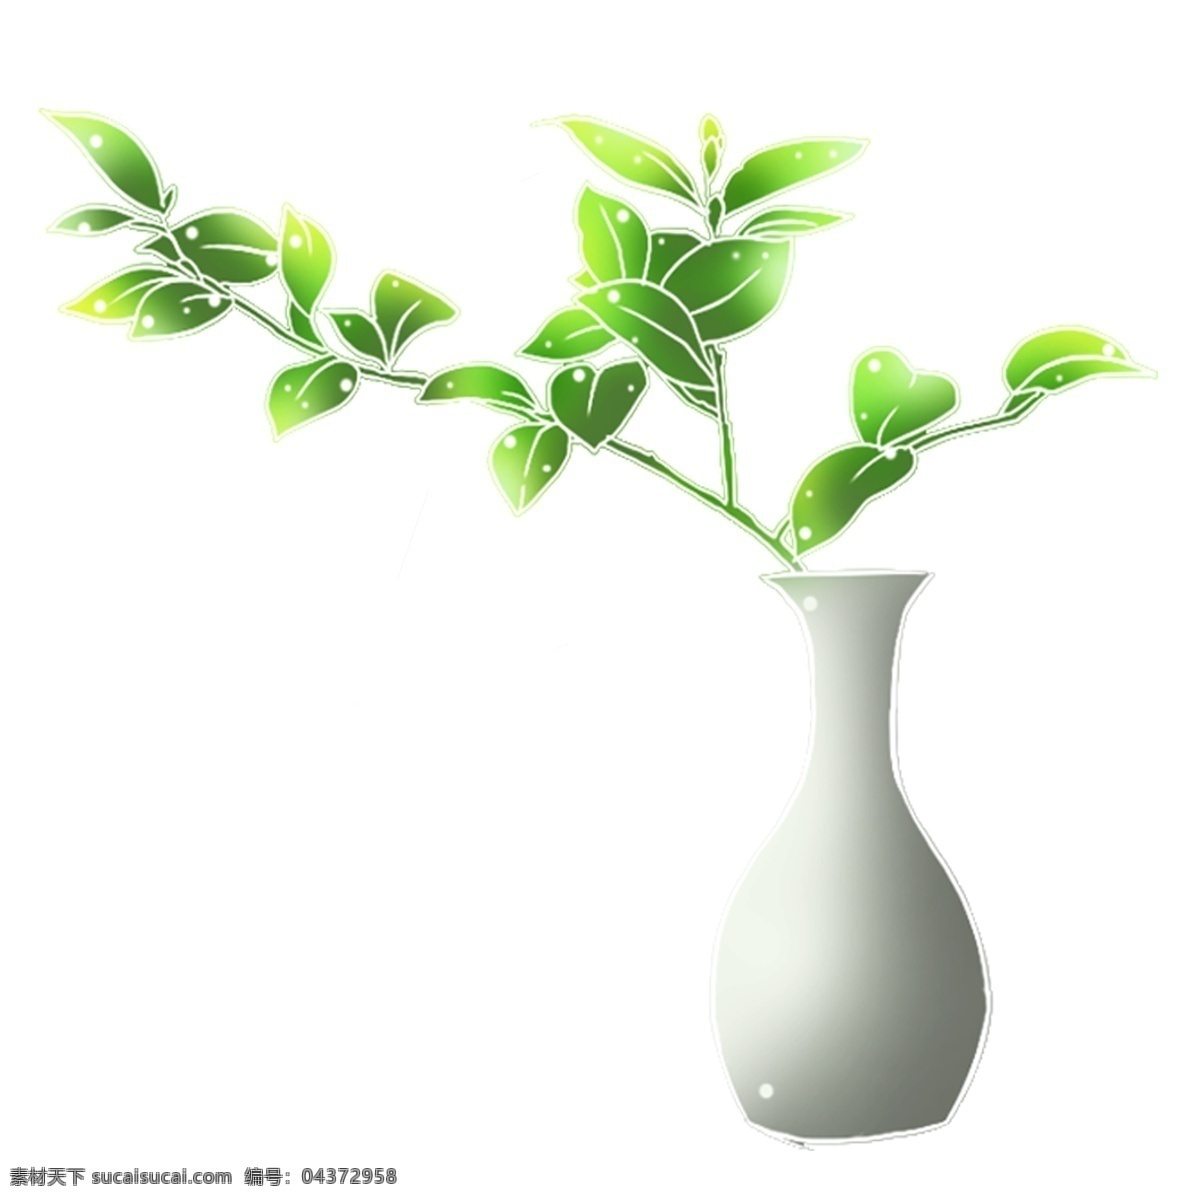 瓶 花 植物 免 扣 瓶子 花瓶 白色花瓶 叶子 自然 绿植 瓶花 清新 绿色 绿 健康 美丽 优雅 美观 环境